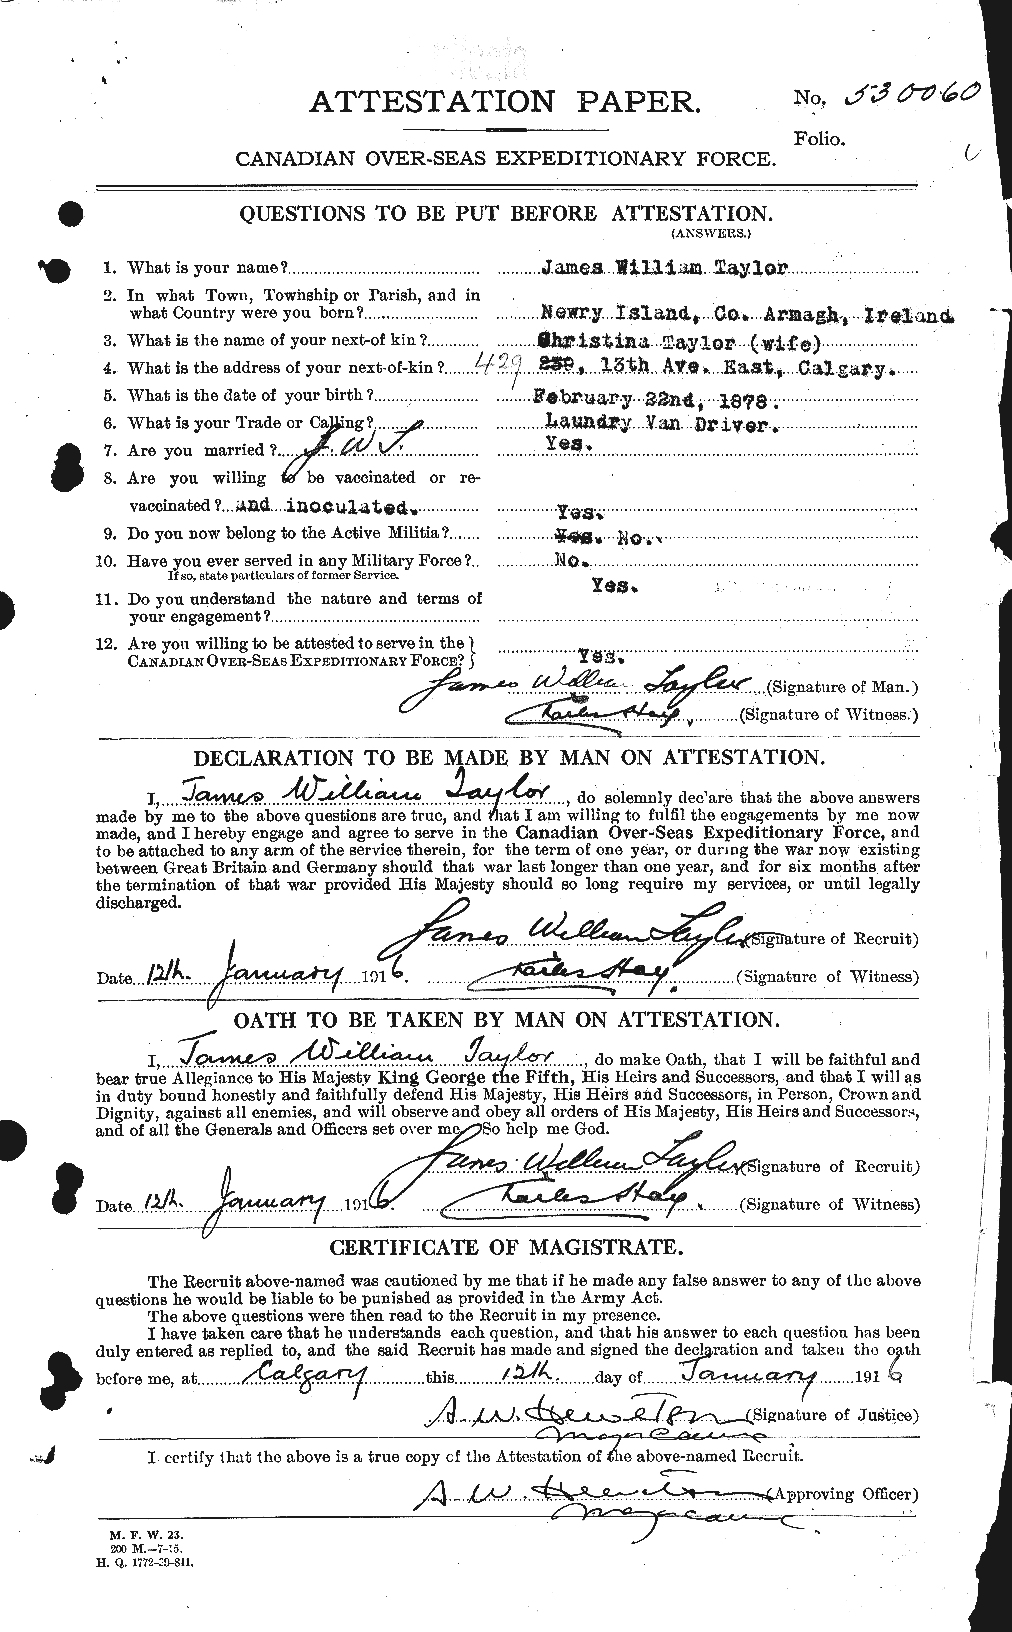 Dossiers du Personnel de la Première Guerre mondiale - CEC 626964a